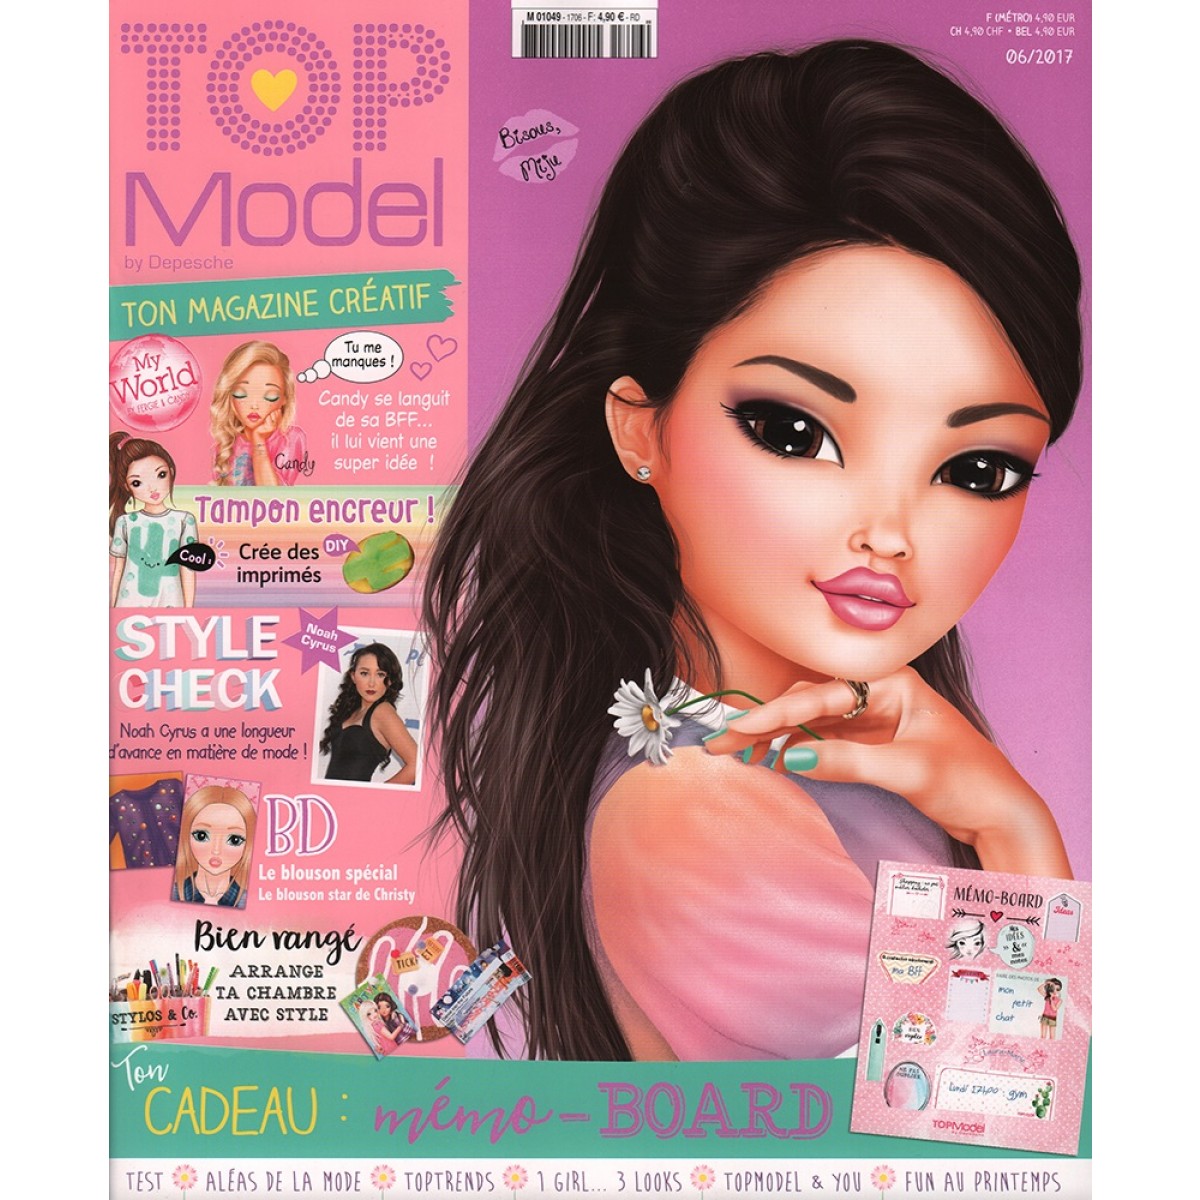 Top magazine. Журнал топ модели. Топ модель девочки из журнала. Постеры из журнала топ модель. Топ-модель журнал для девочек.